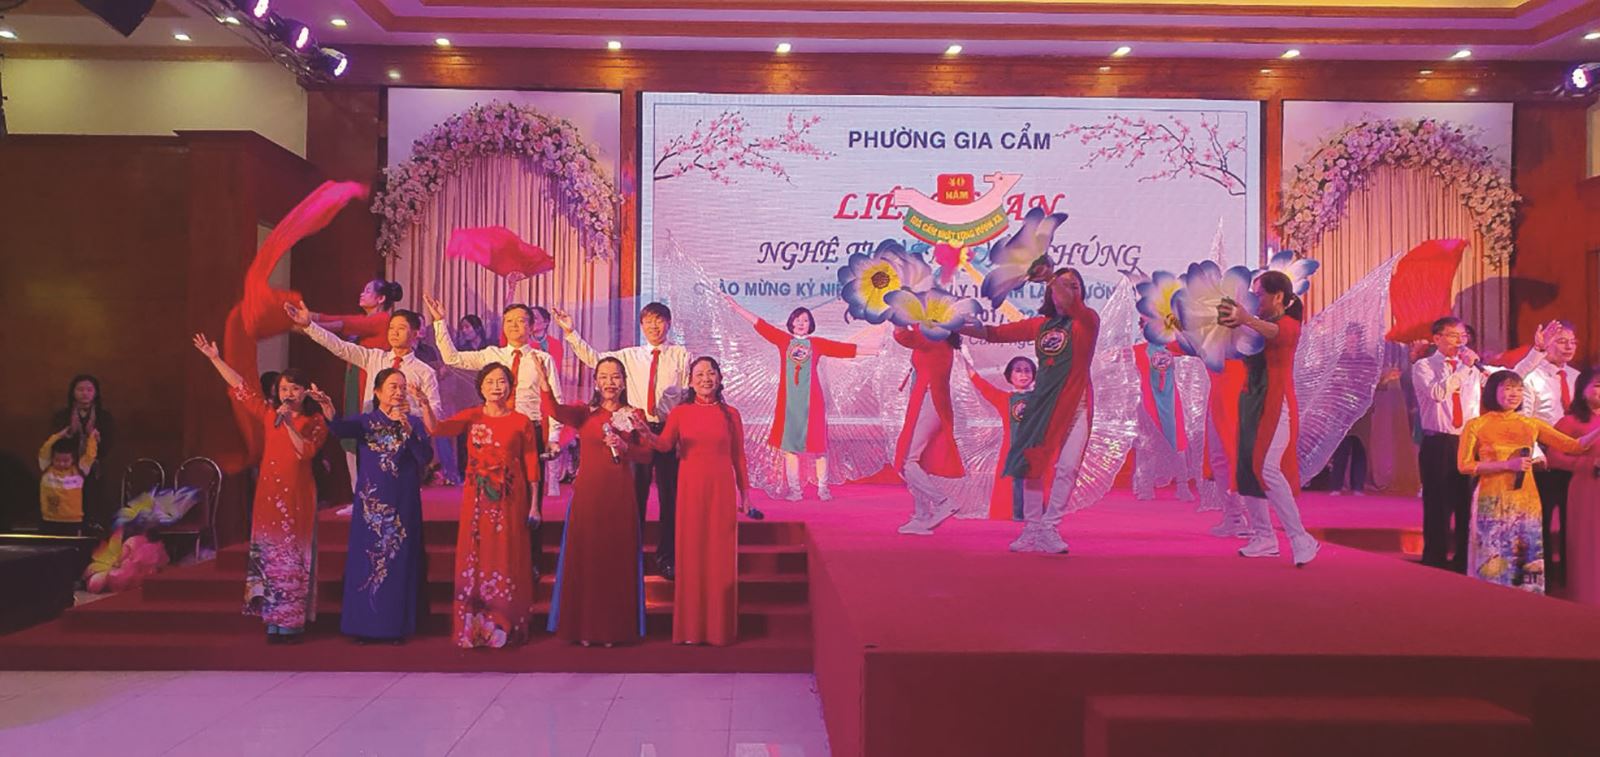 Phú Thọ: Liên hoan Văn nghệ quần chúng chào mừng 40 năm thành lập phường Gia Cẩm